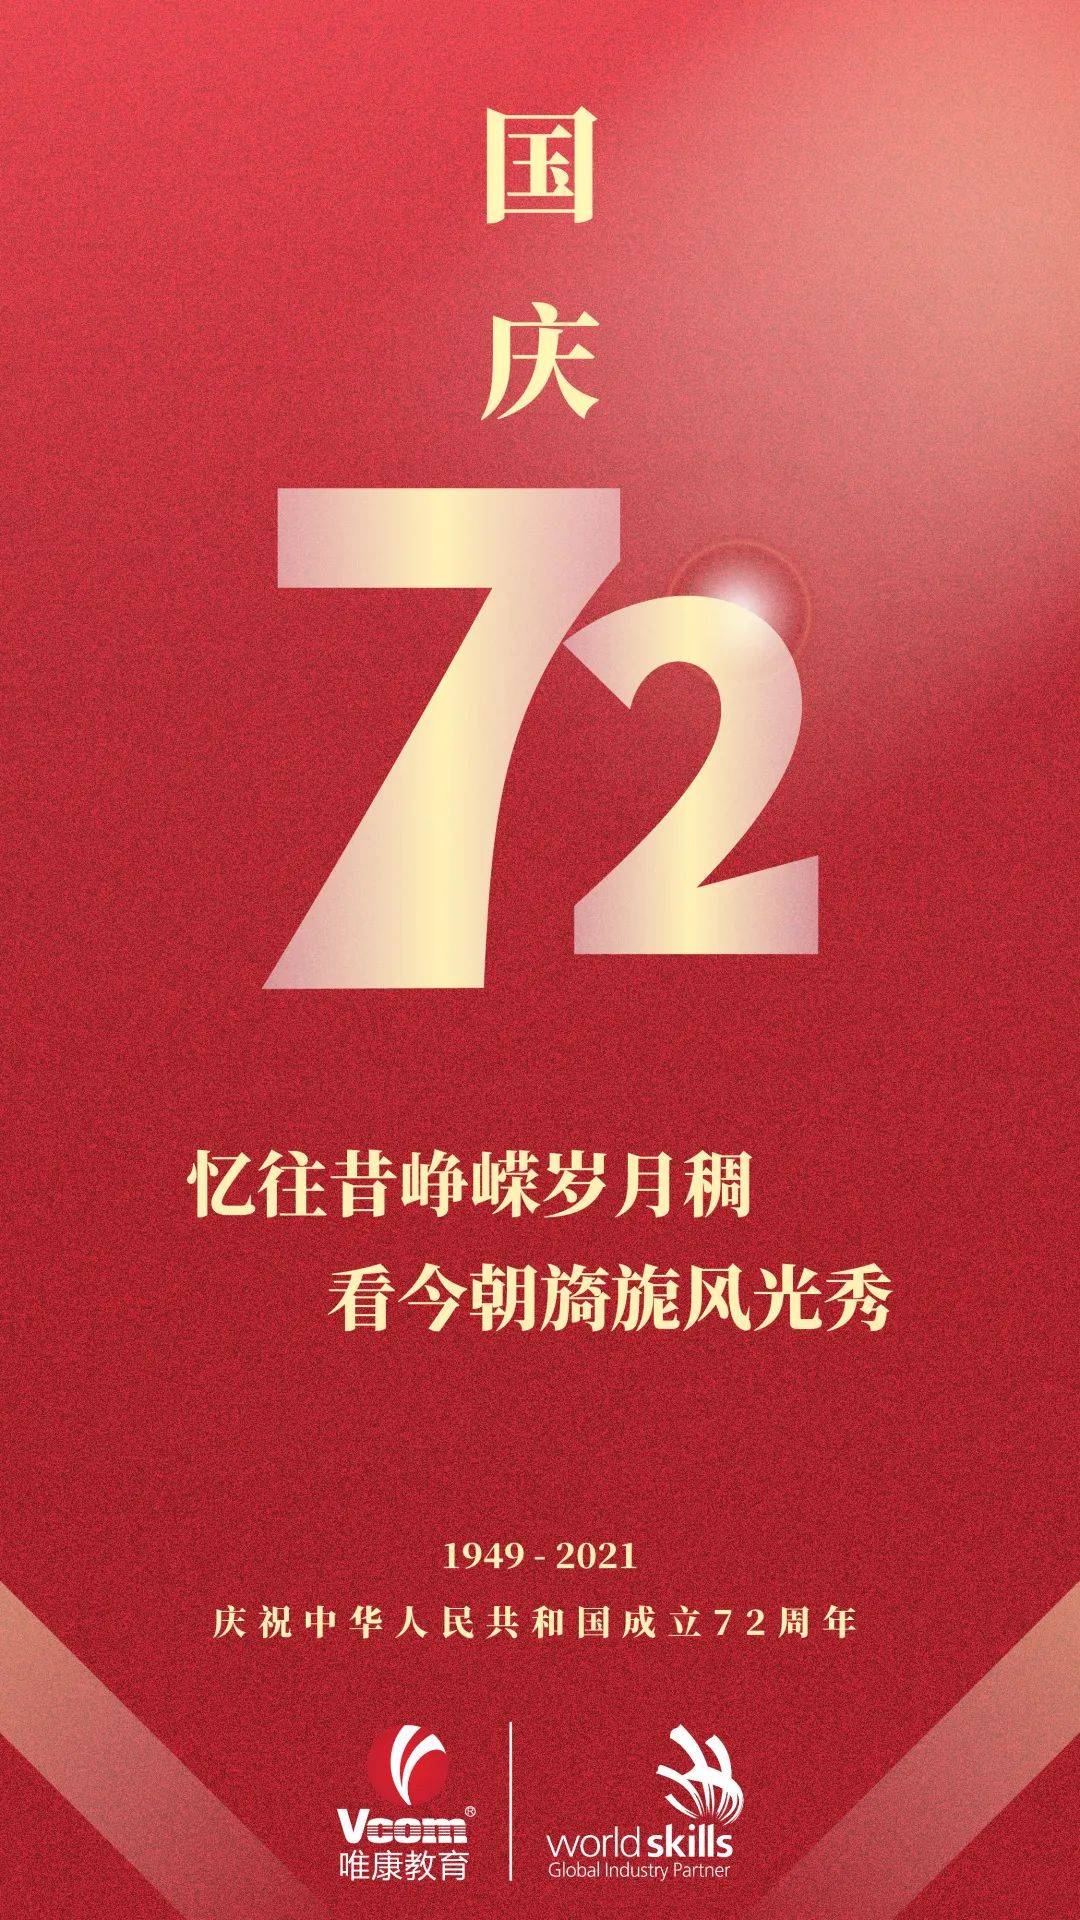 国庆节快乐!庆中华人民共和国成立72周年 | 祝福祖国生日快乐!